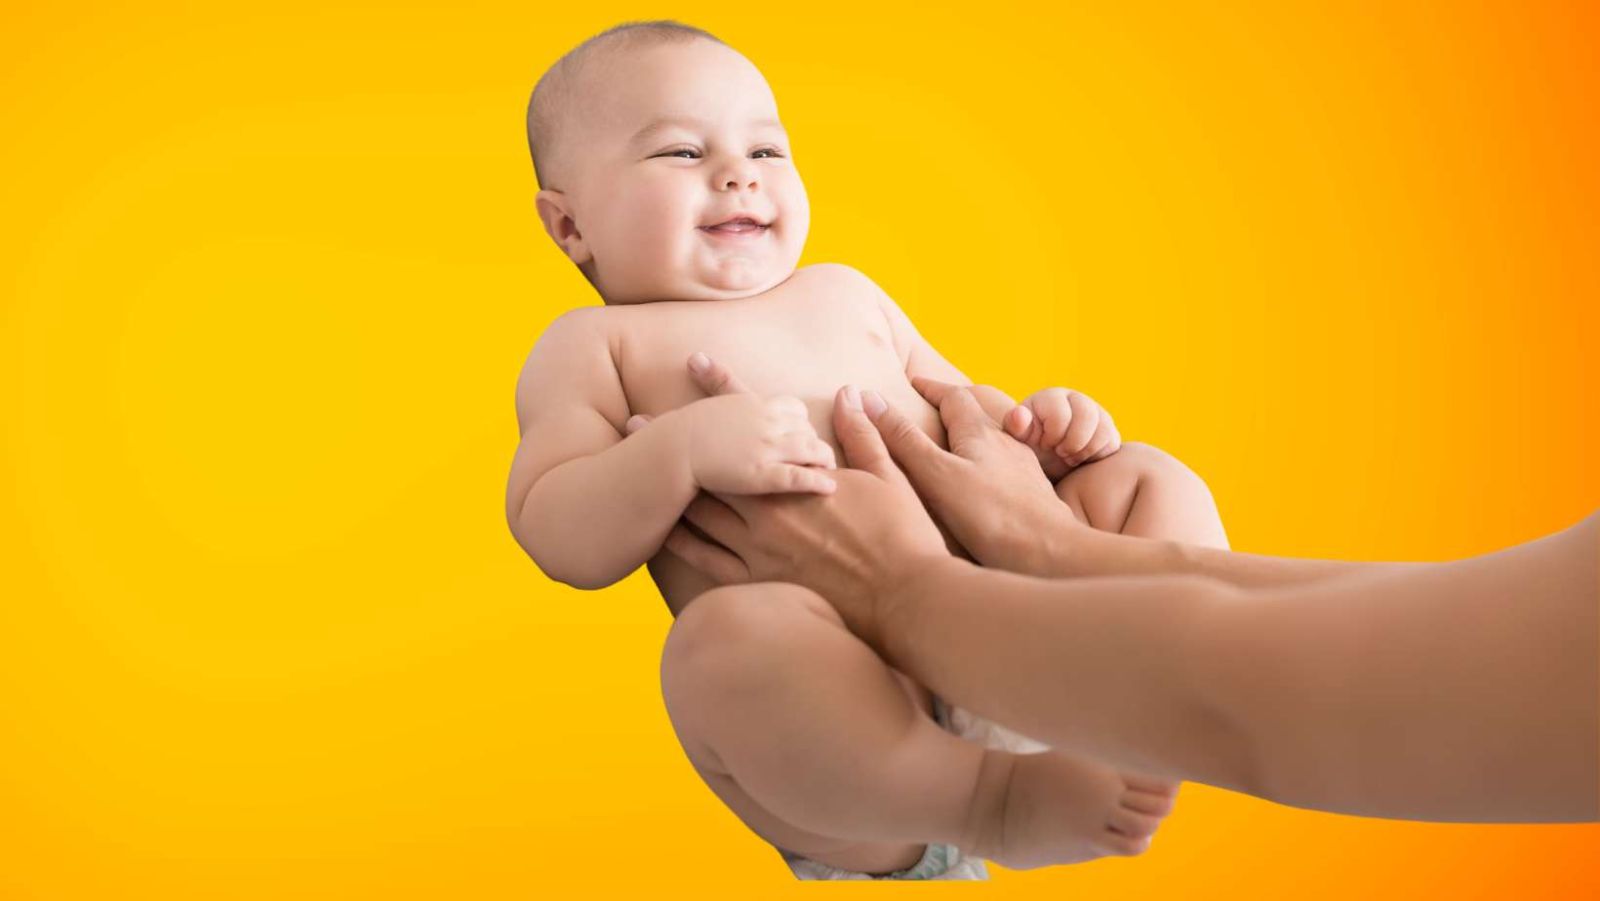 Massage bébé : la technique secrète pour apaiser votre enfant et renforcer votre lien